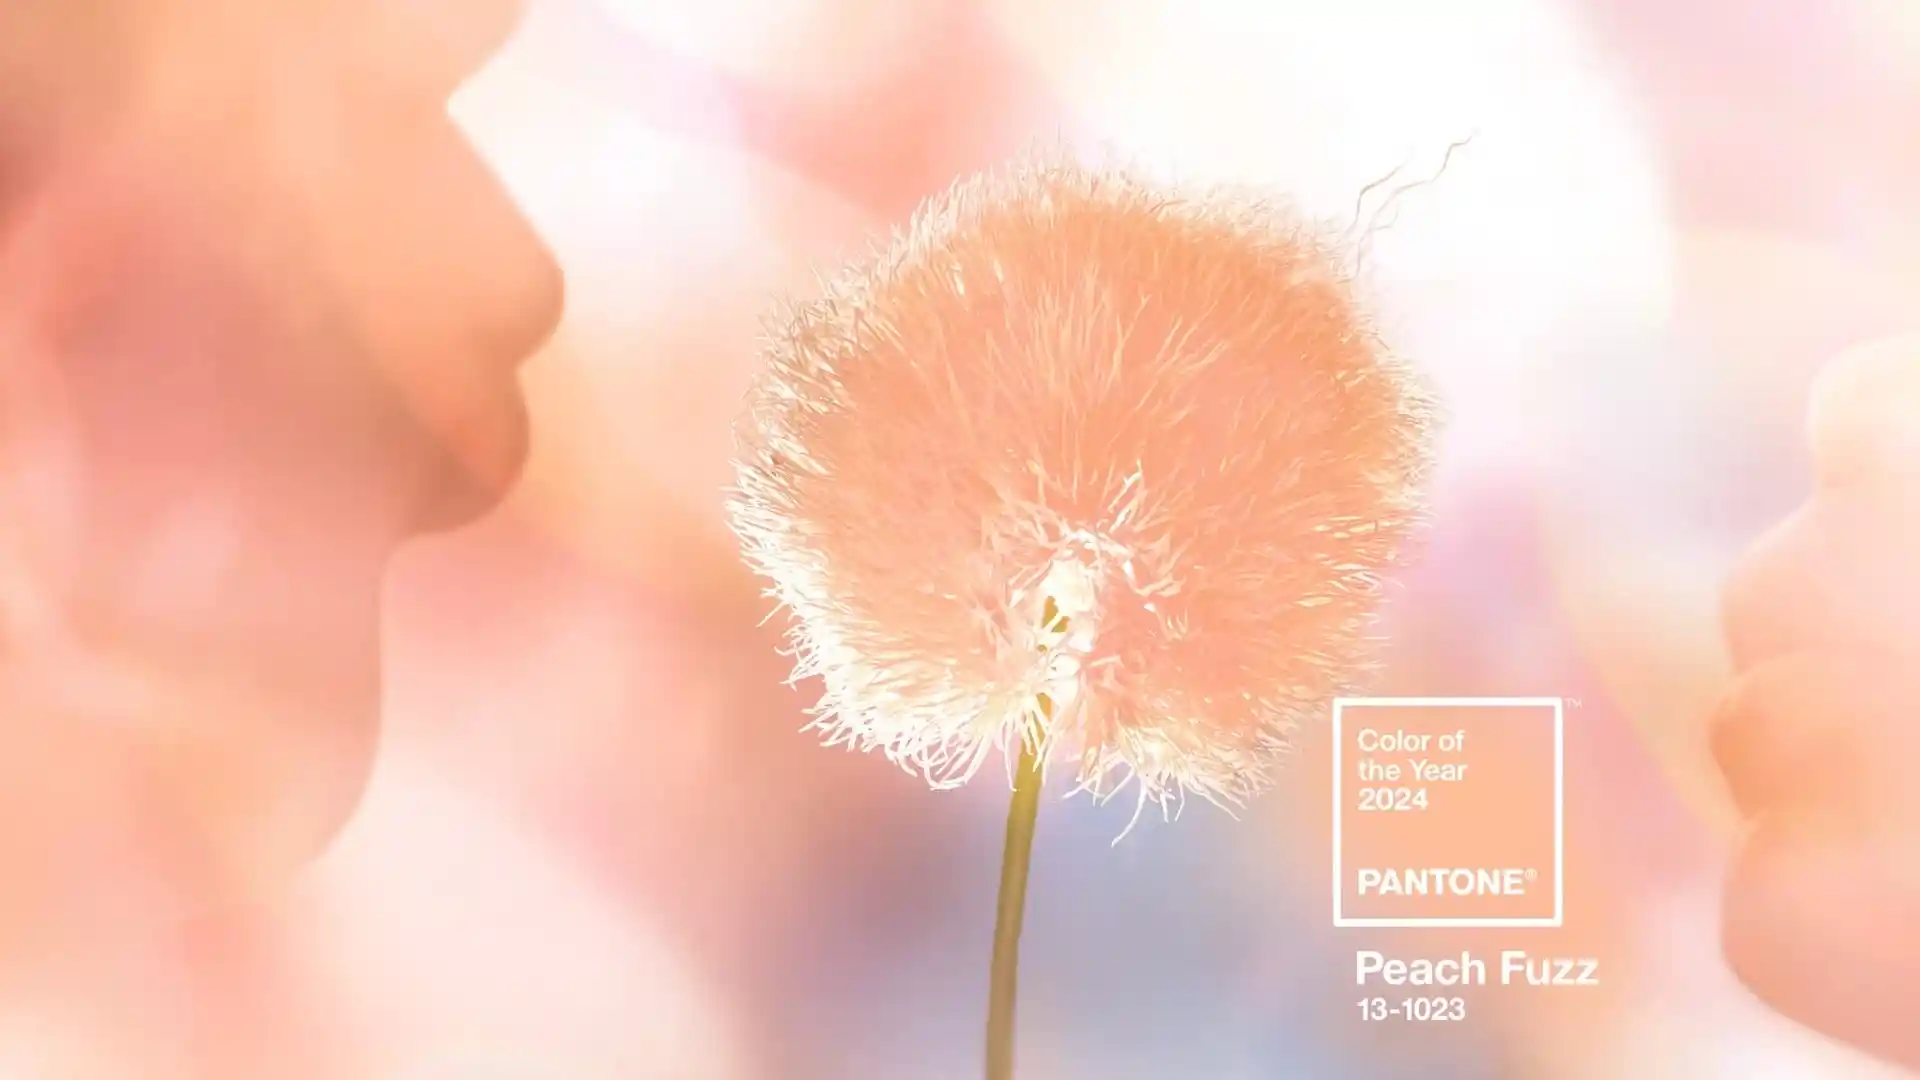 Peach Fuzz: la pelusa de durazno es el color de 2024 según Pantone